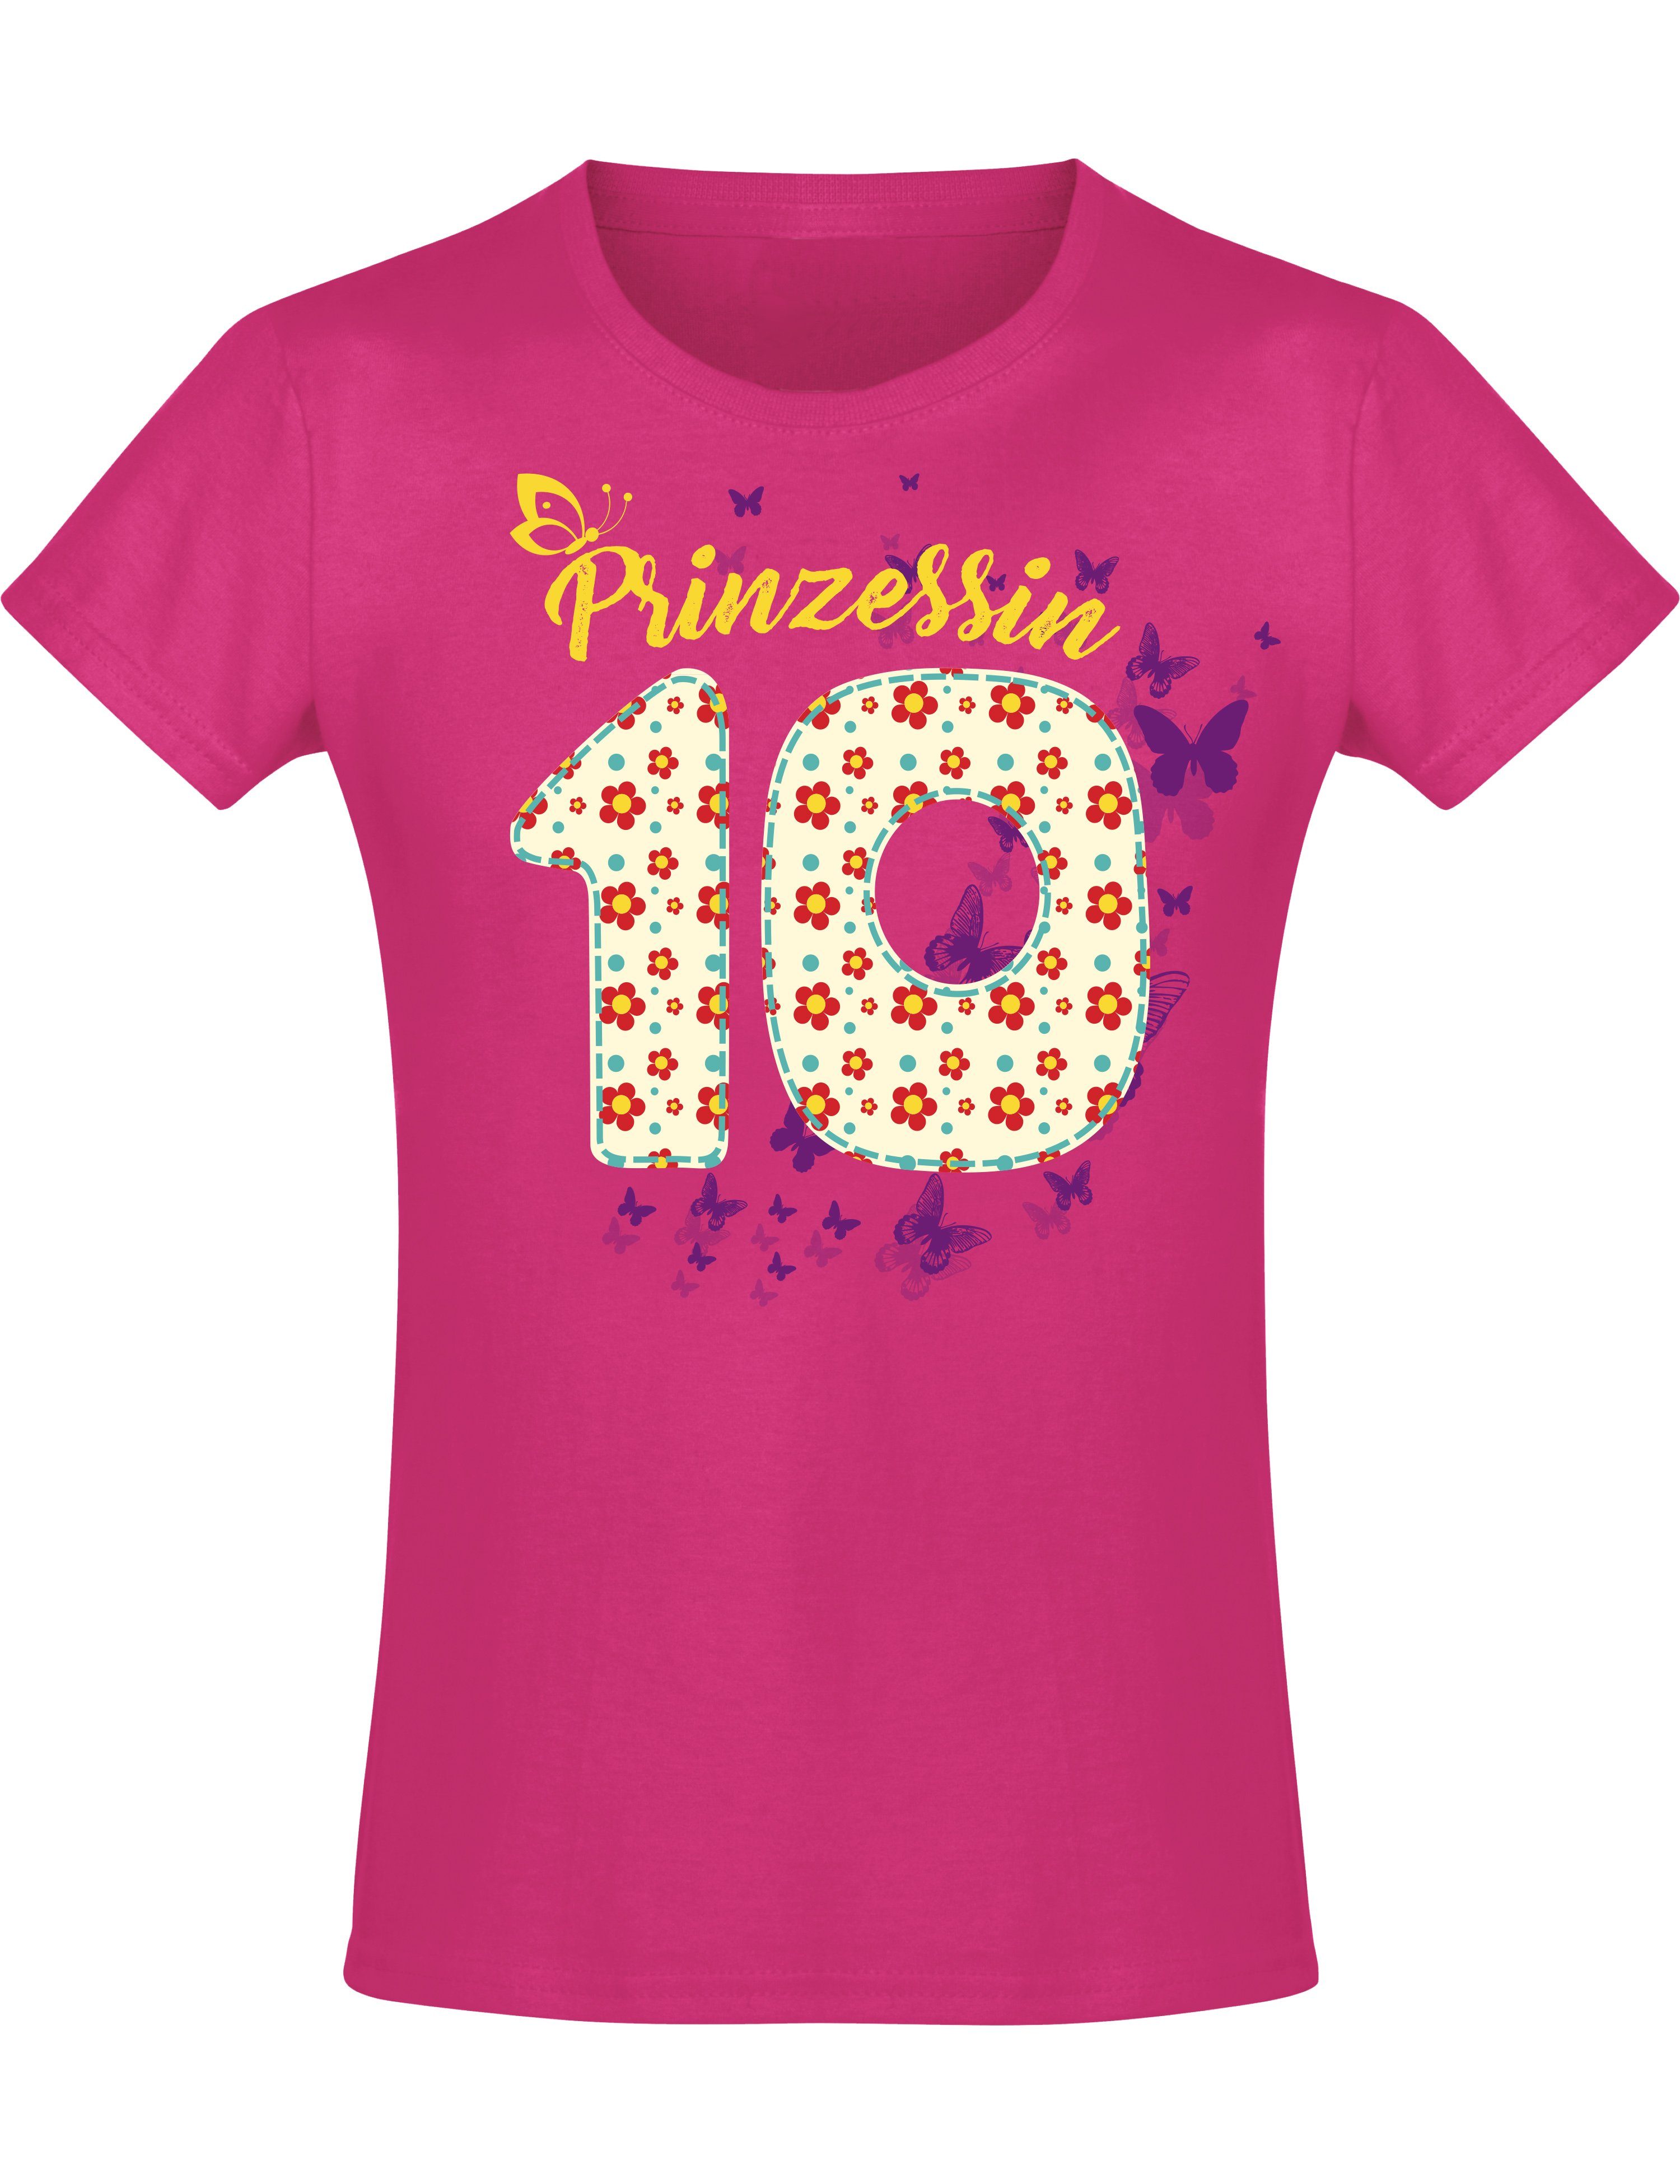 Baddery Print-Shirt Geburstagsgeschenk für Mädchen : 10 Jahre mit Blumen, hochwertiger Siebdruck, aus Baumwolle